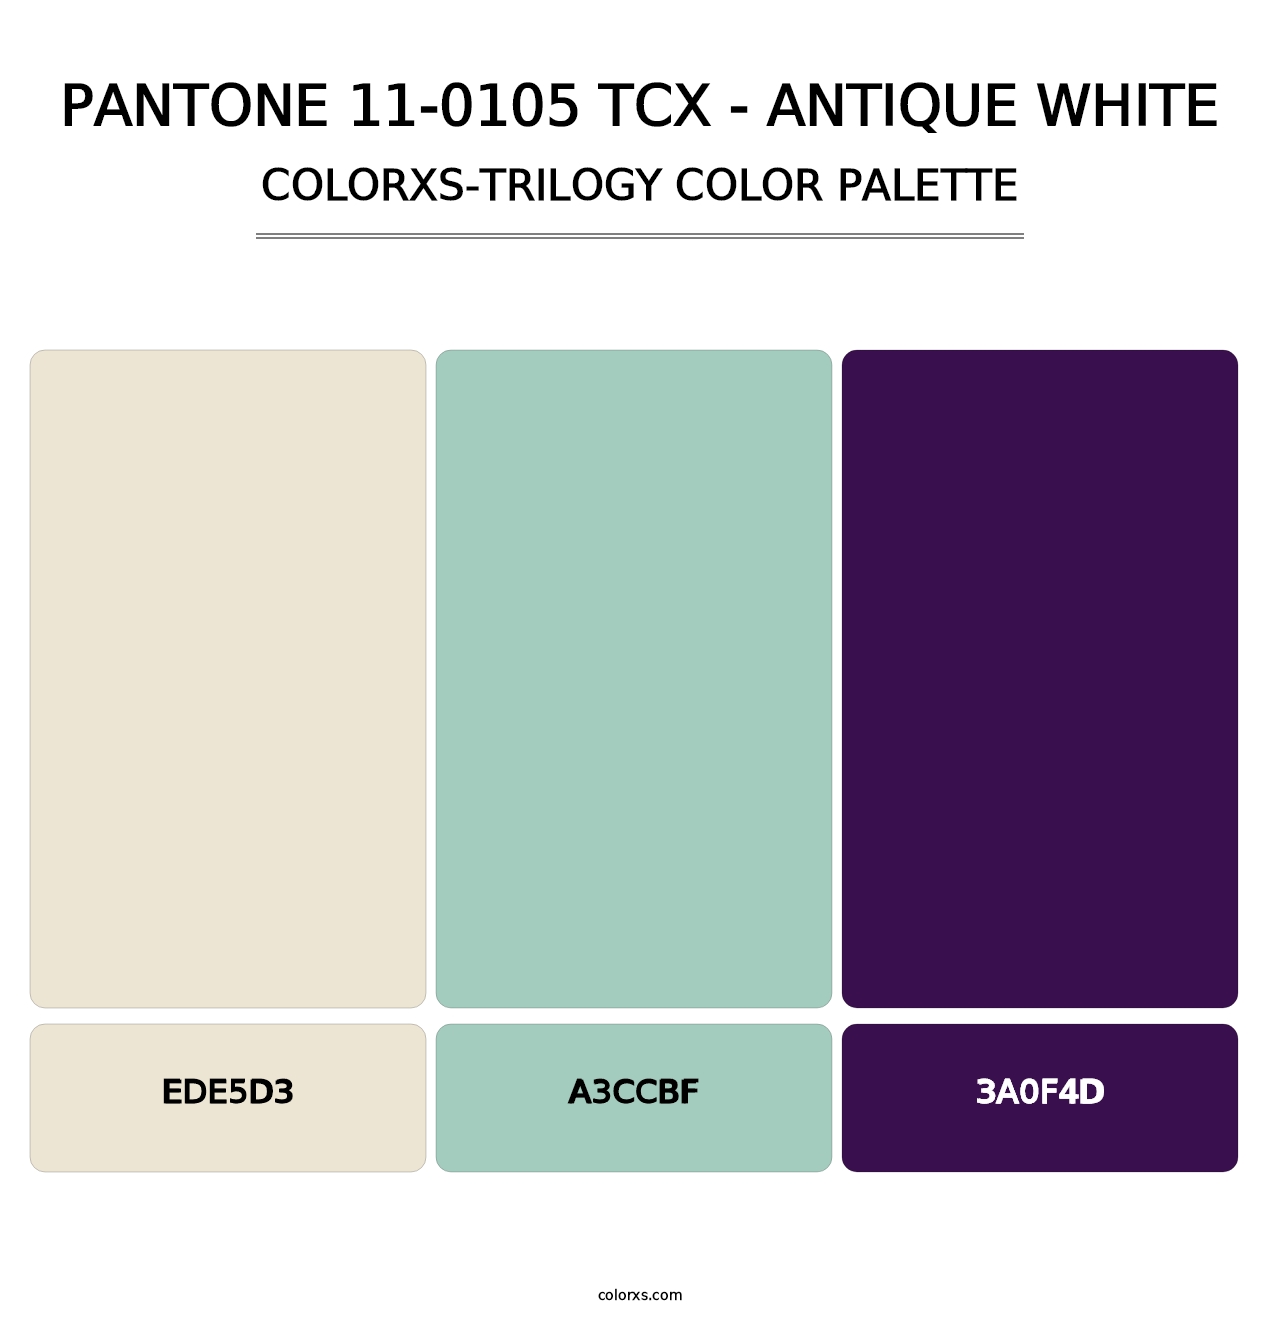 PANTONE 11-0105 TCX - Antique White - Colorxs Trilogy Palette